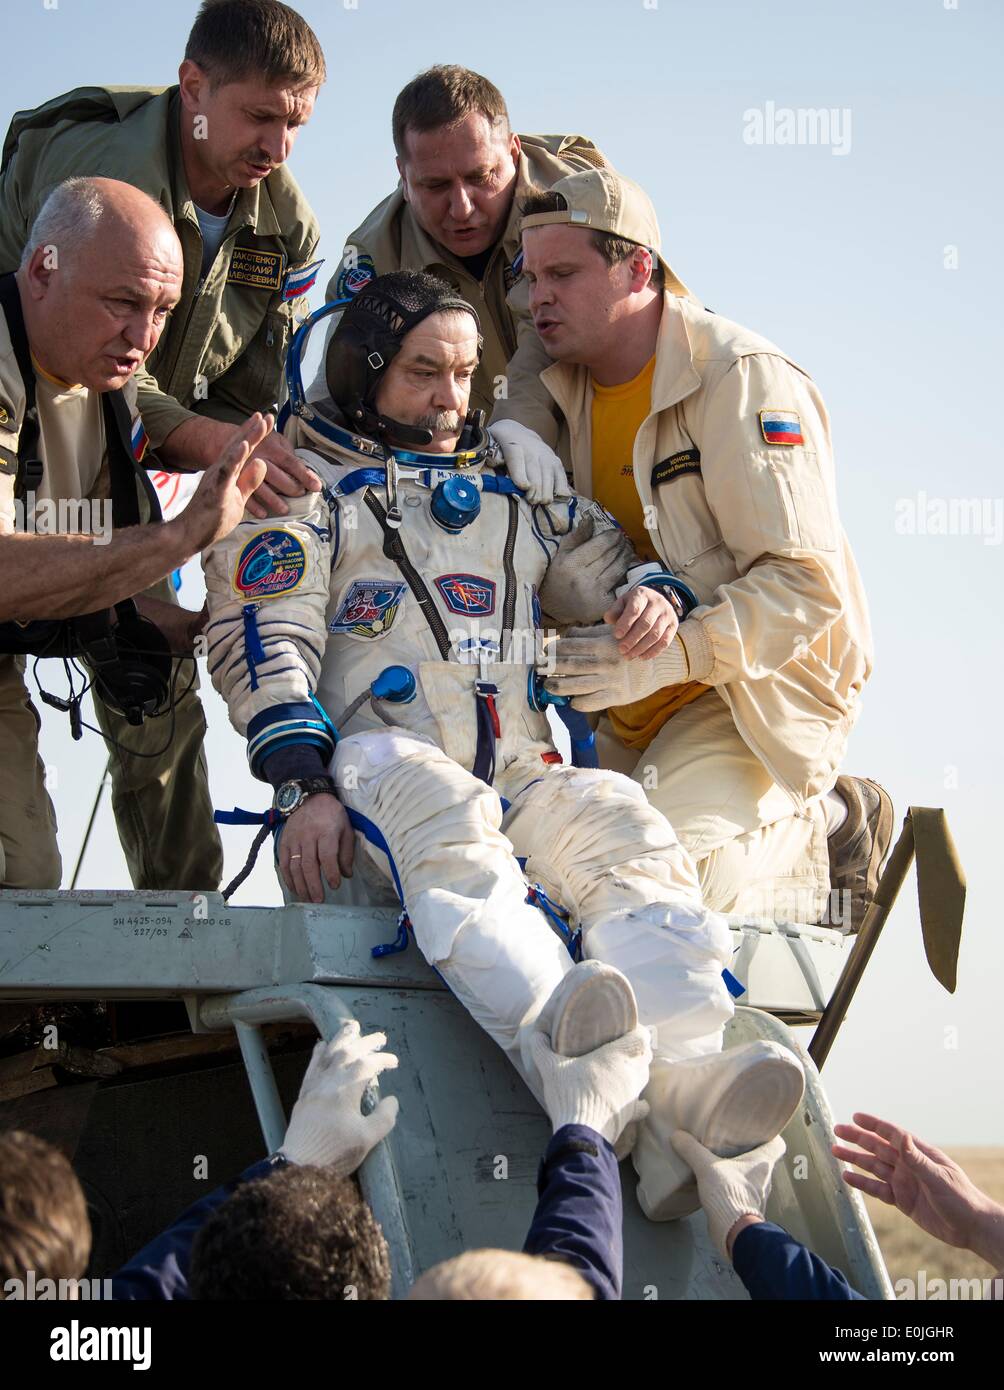 ISS-Expedition 39 Sojus Commander Mikhail Tyurin von Roskosmos ist aus der Kapsel nur wenige Minuten nach der Landung mit anderen Expedition-Crew-Mitglieder in das Raumschiff Sojus TMA - 11 M 14. Mai 2014 in der Nähe der Stadt Zhezkazgan, Kasachstan geholfen hat. Wakata, Tyurin und Mastracchio Rückkehr zur Erde nach mehr als sechs Monate an Bord der internationalen Raumstation ISS, wo sie als Mitglieder der Expedition 38 und 39 Mannschaften dienten. Stockfoto